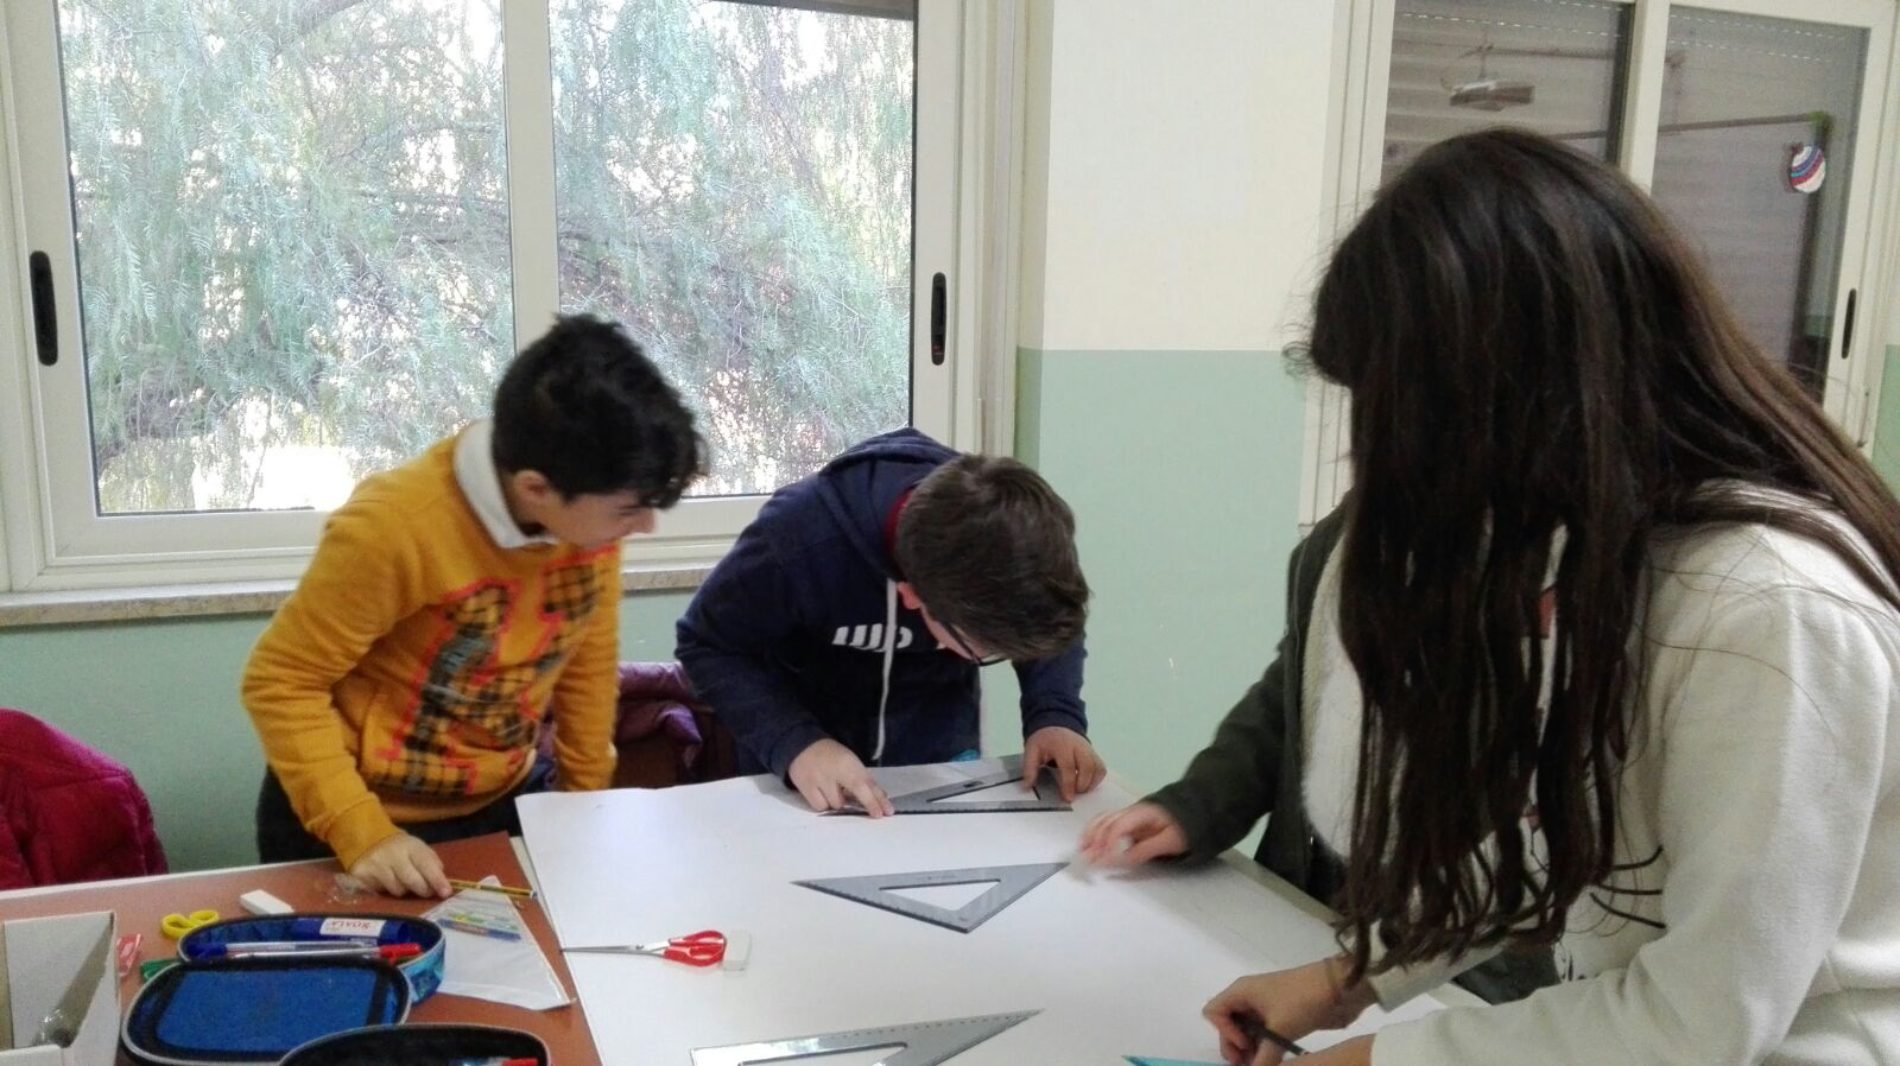 Giocare con la matematica e lo sport didattico per gli alunni del comprensivo “Europa”